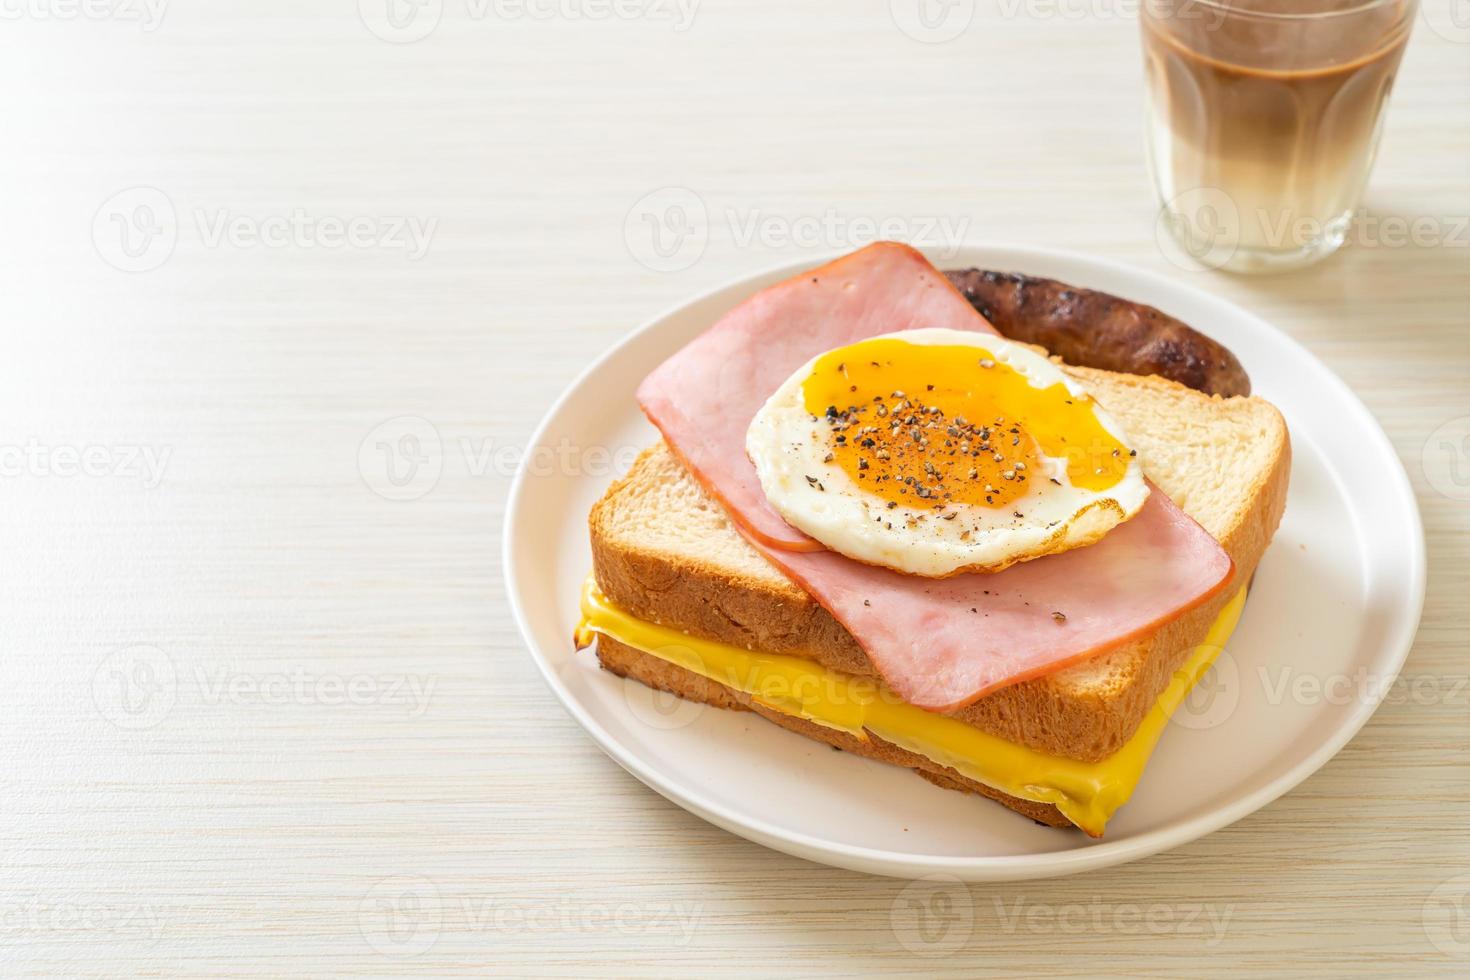 zelfgebakken brood geroosterde kaas, belegde ham en gebakken ei met varkensworst als ontbijt foto